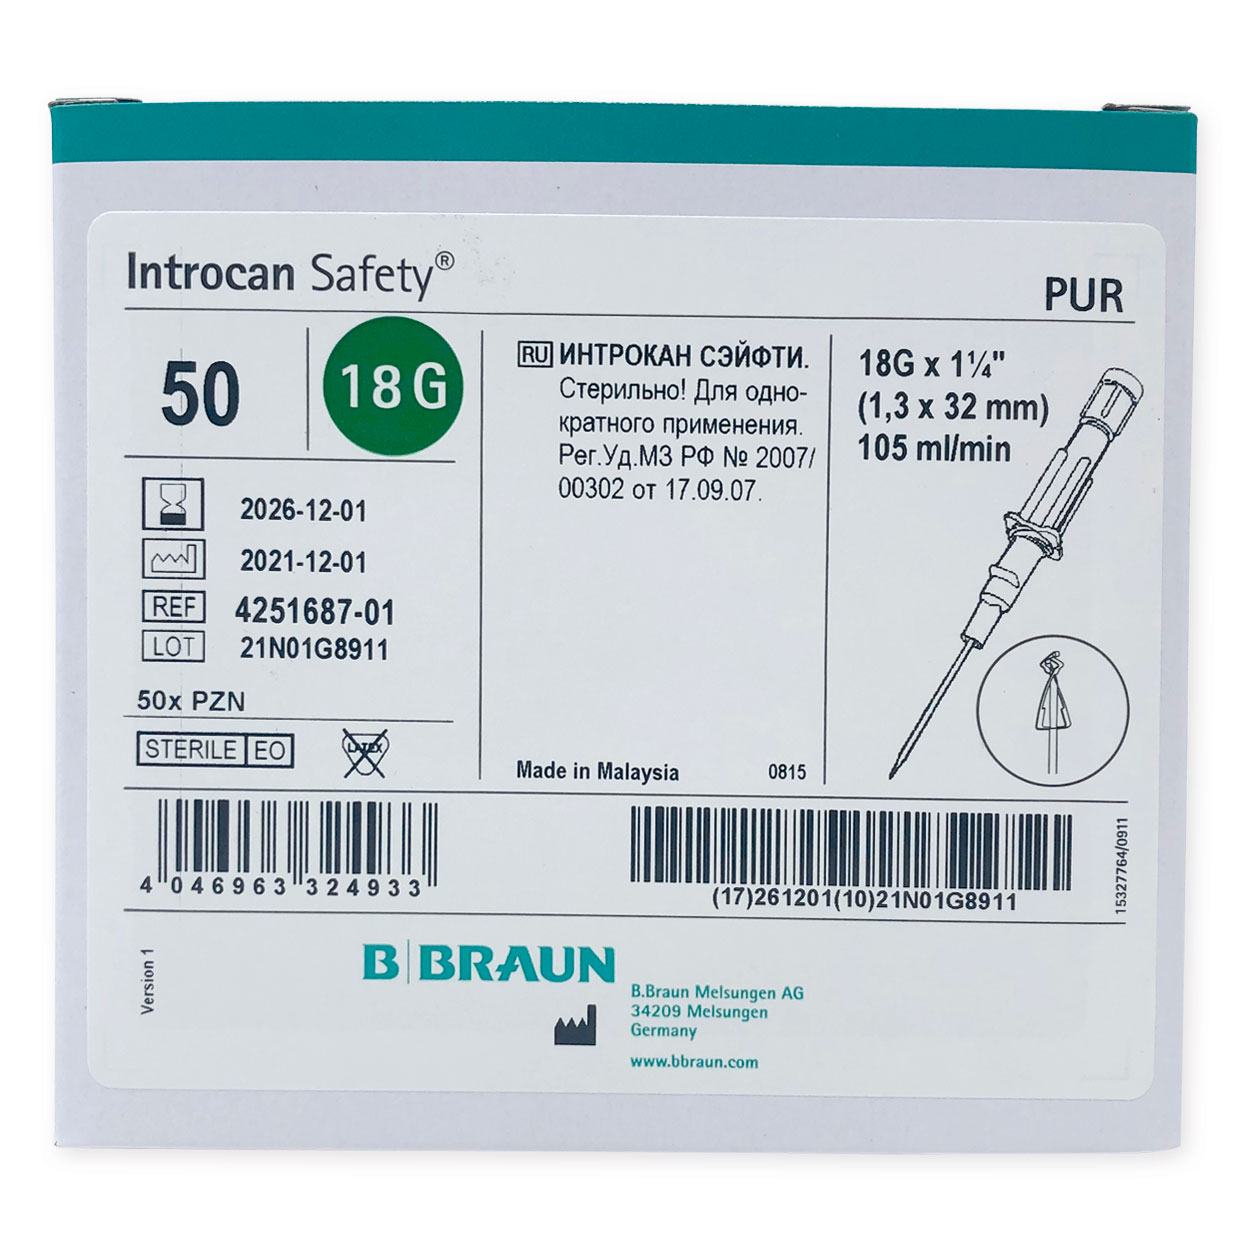 Introcan Safety® 1,30 x 32 mm G 18 grün, PUR - Packung à 50 Stück